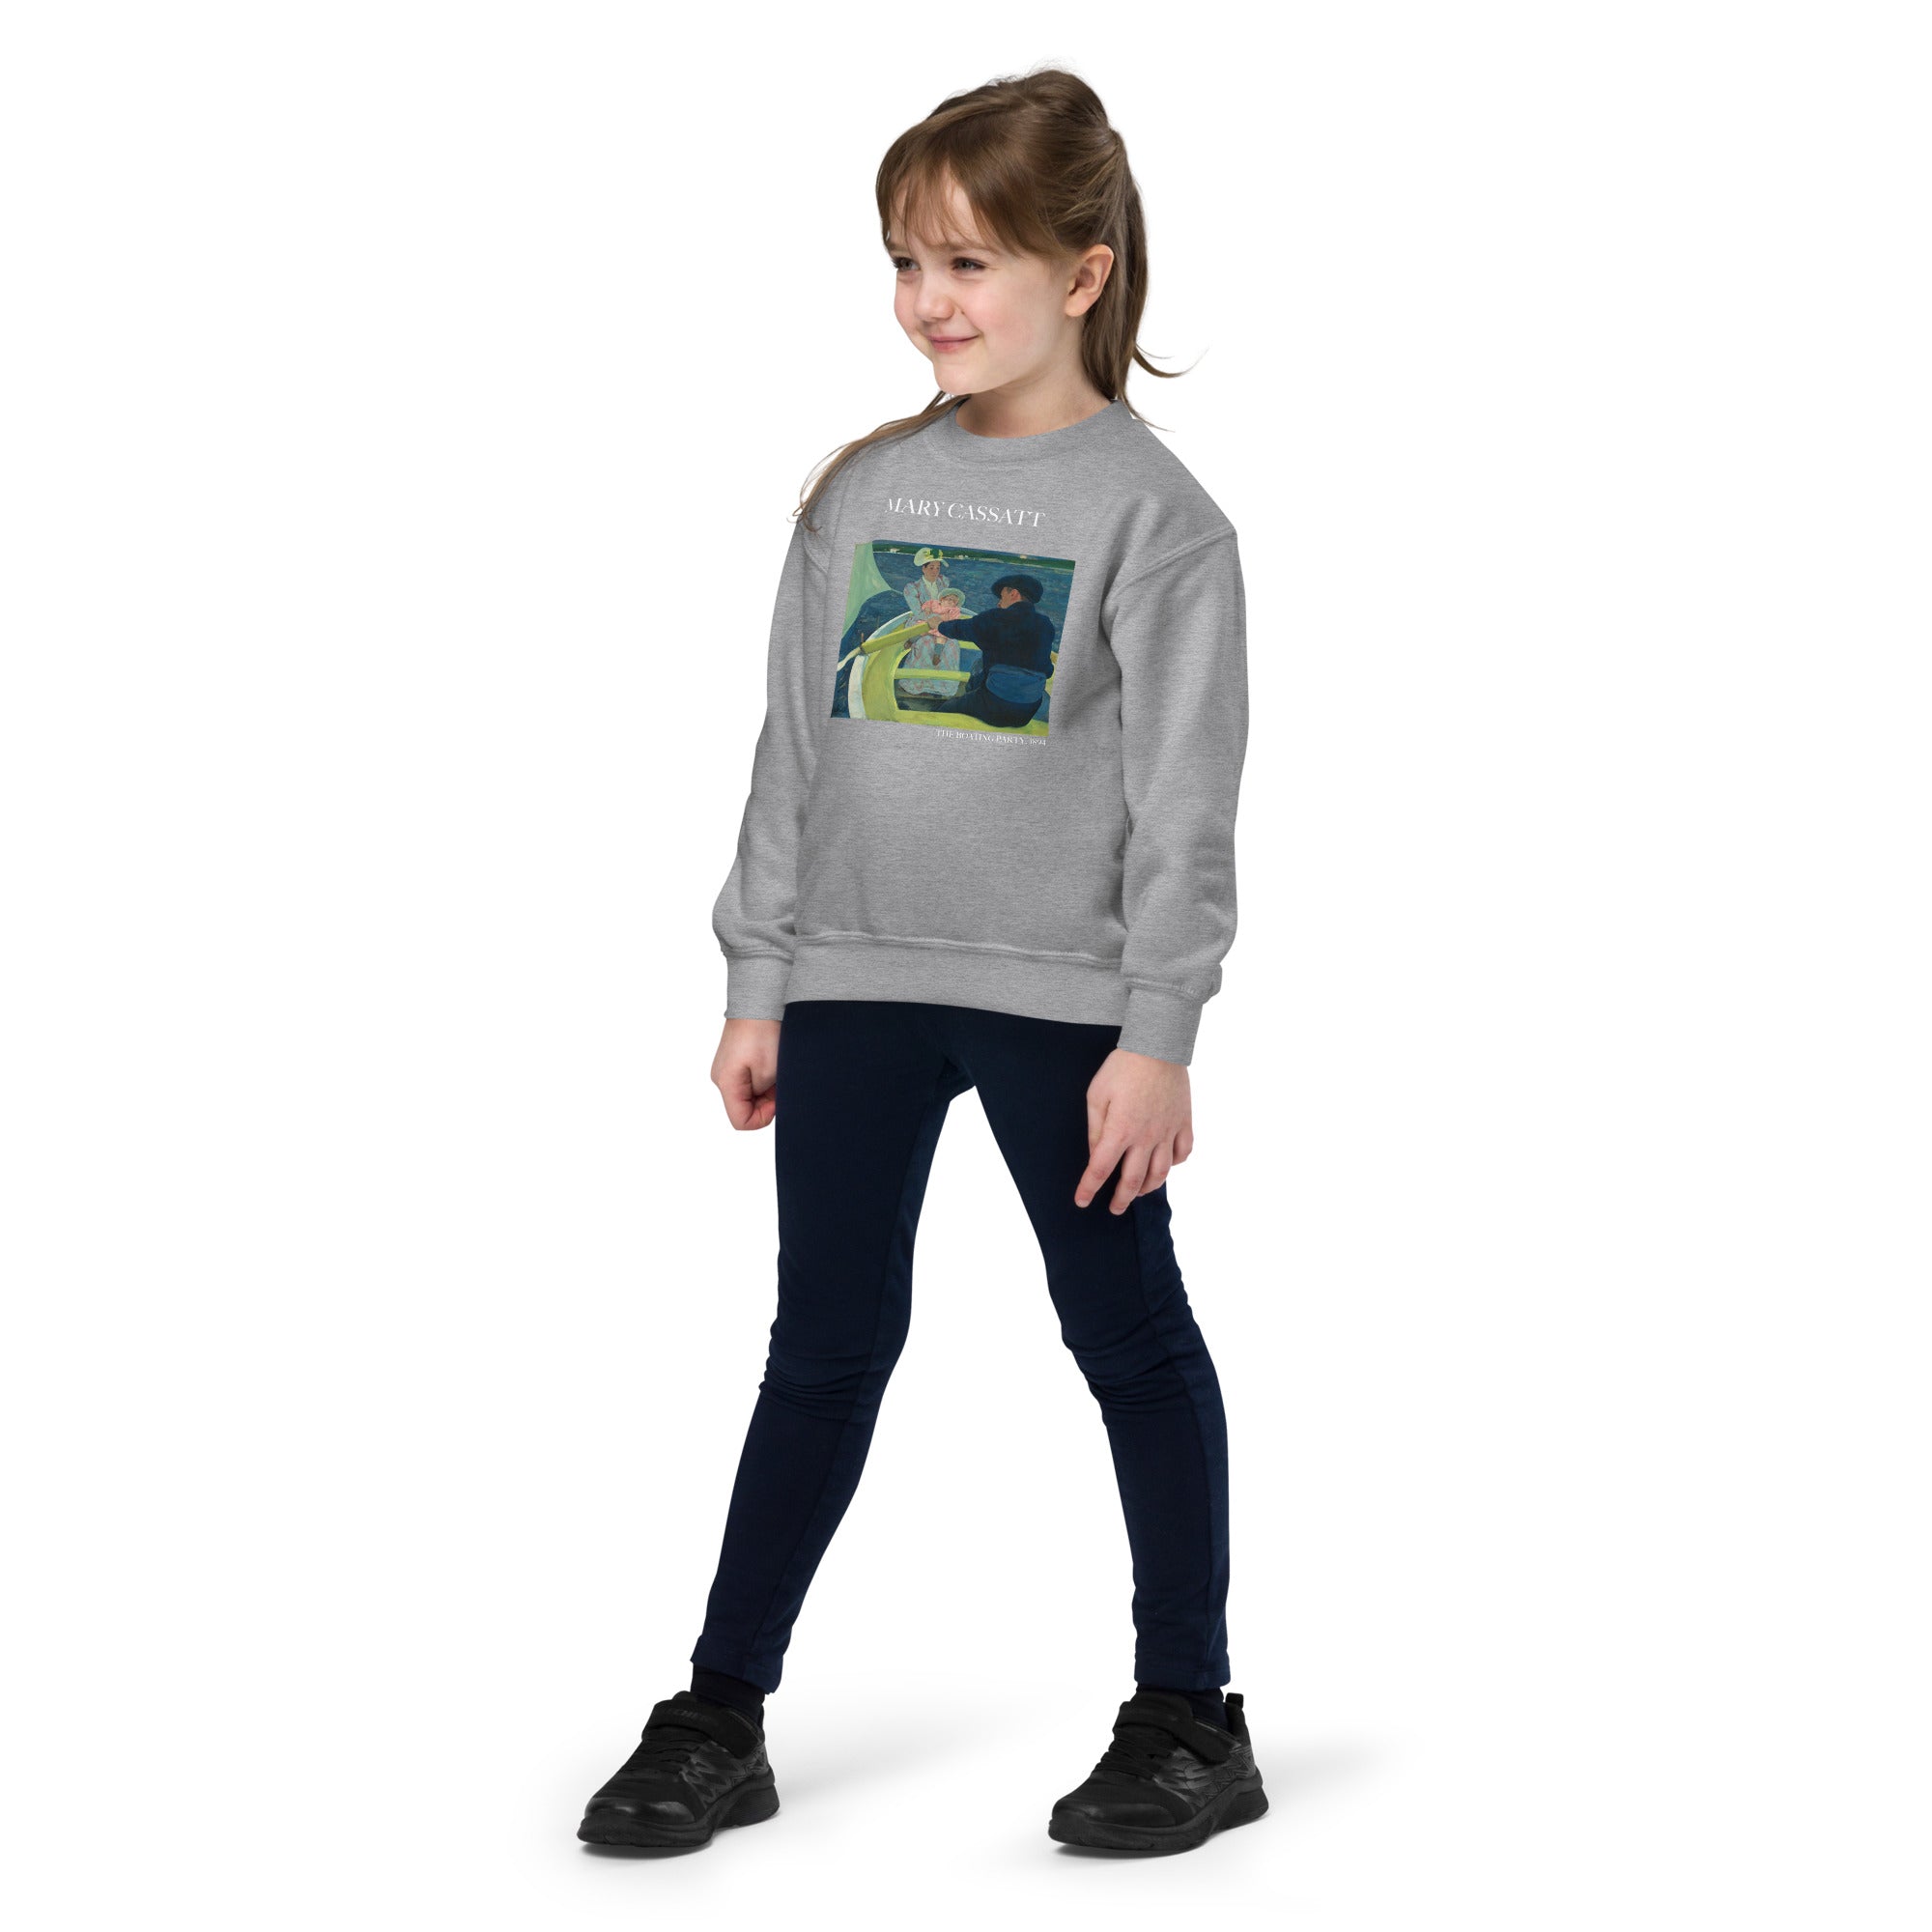 Rundhals-Sweatshirt mit berühmtem Gemälde „The Boating Party“ von Mary Cassatt | Premium-Kunst-Sweatshirt für Jugendliche